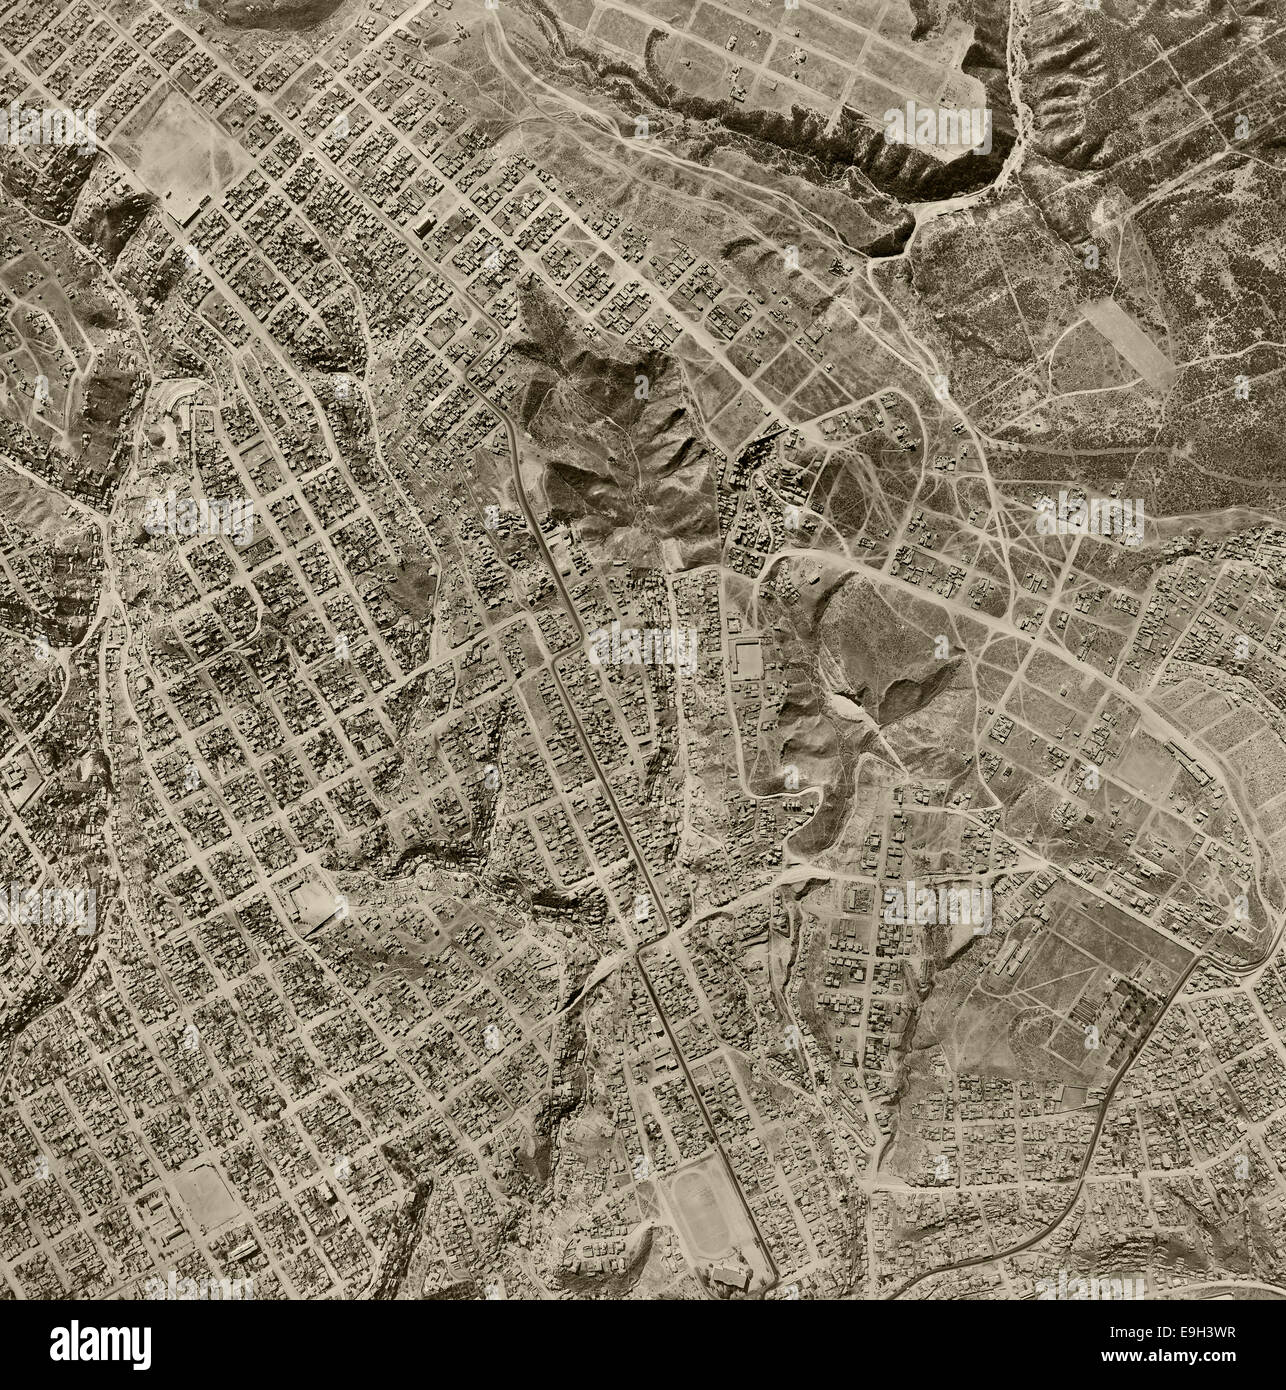 historical aerial photograph Tijuana, Baja, Mexico, 1962 Stock Photo